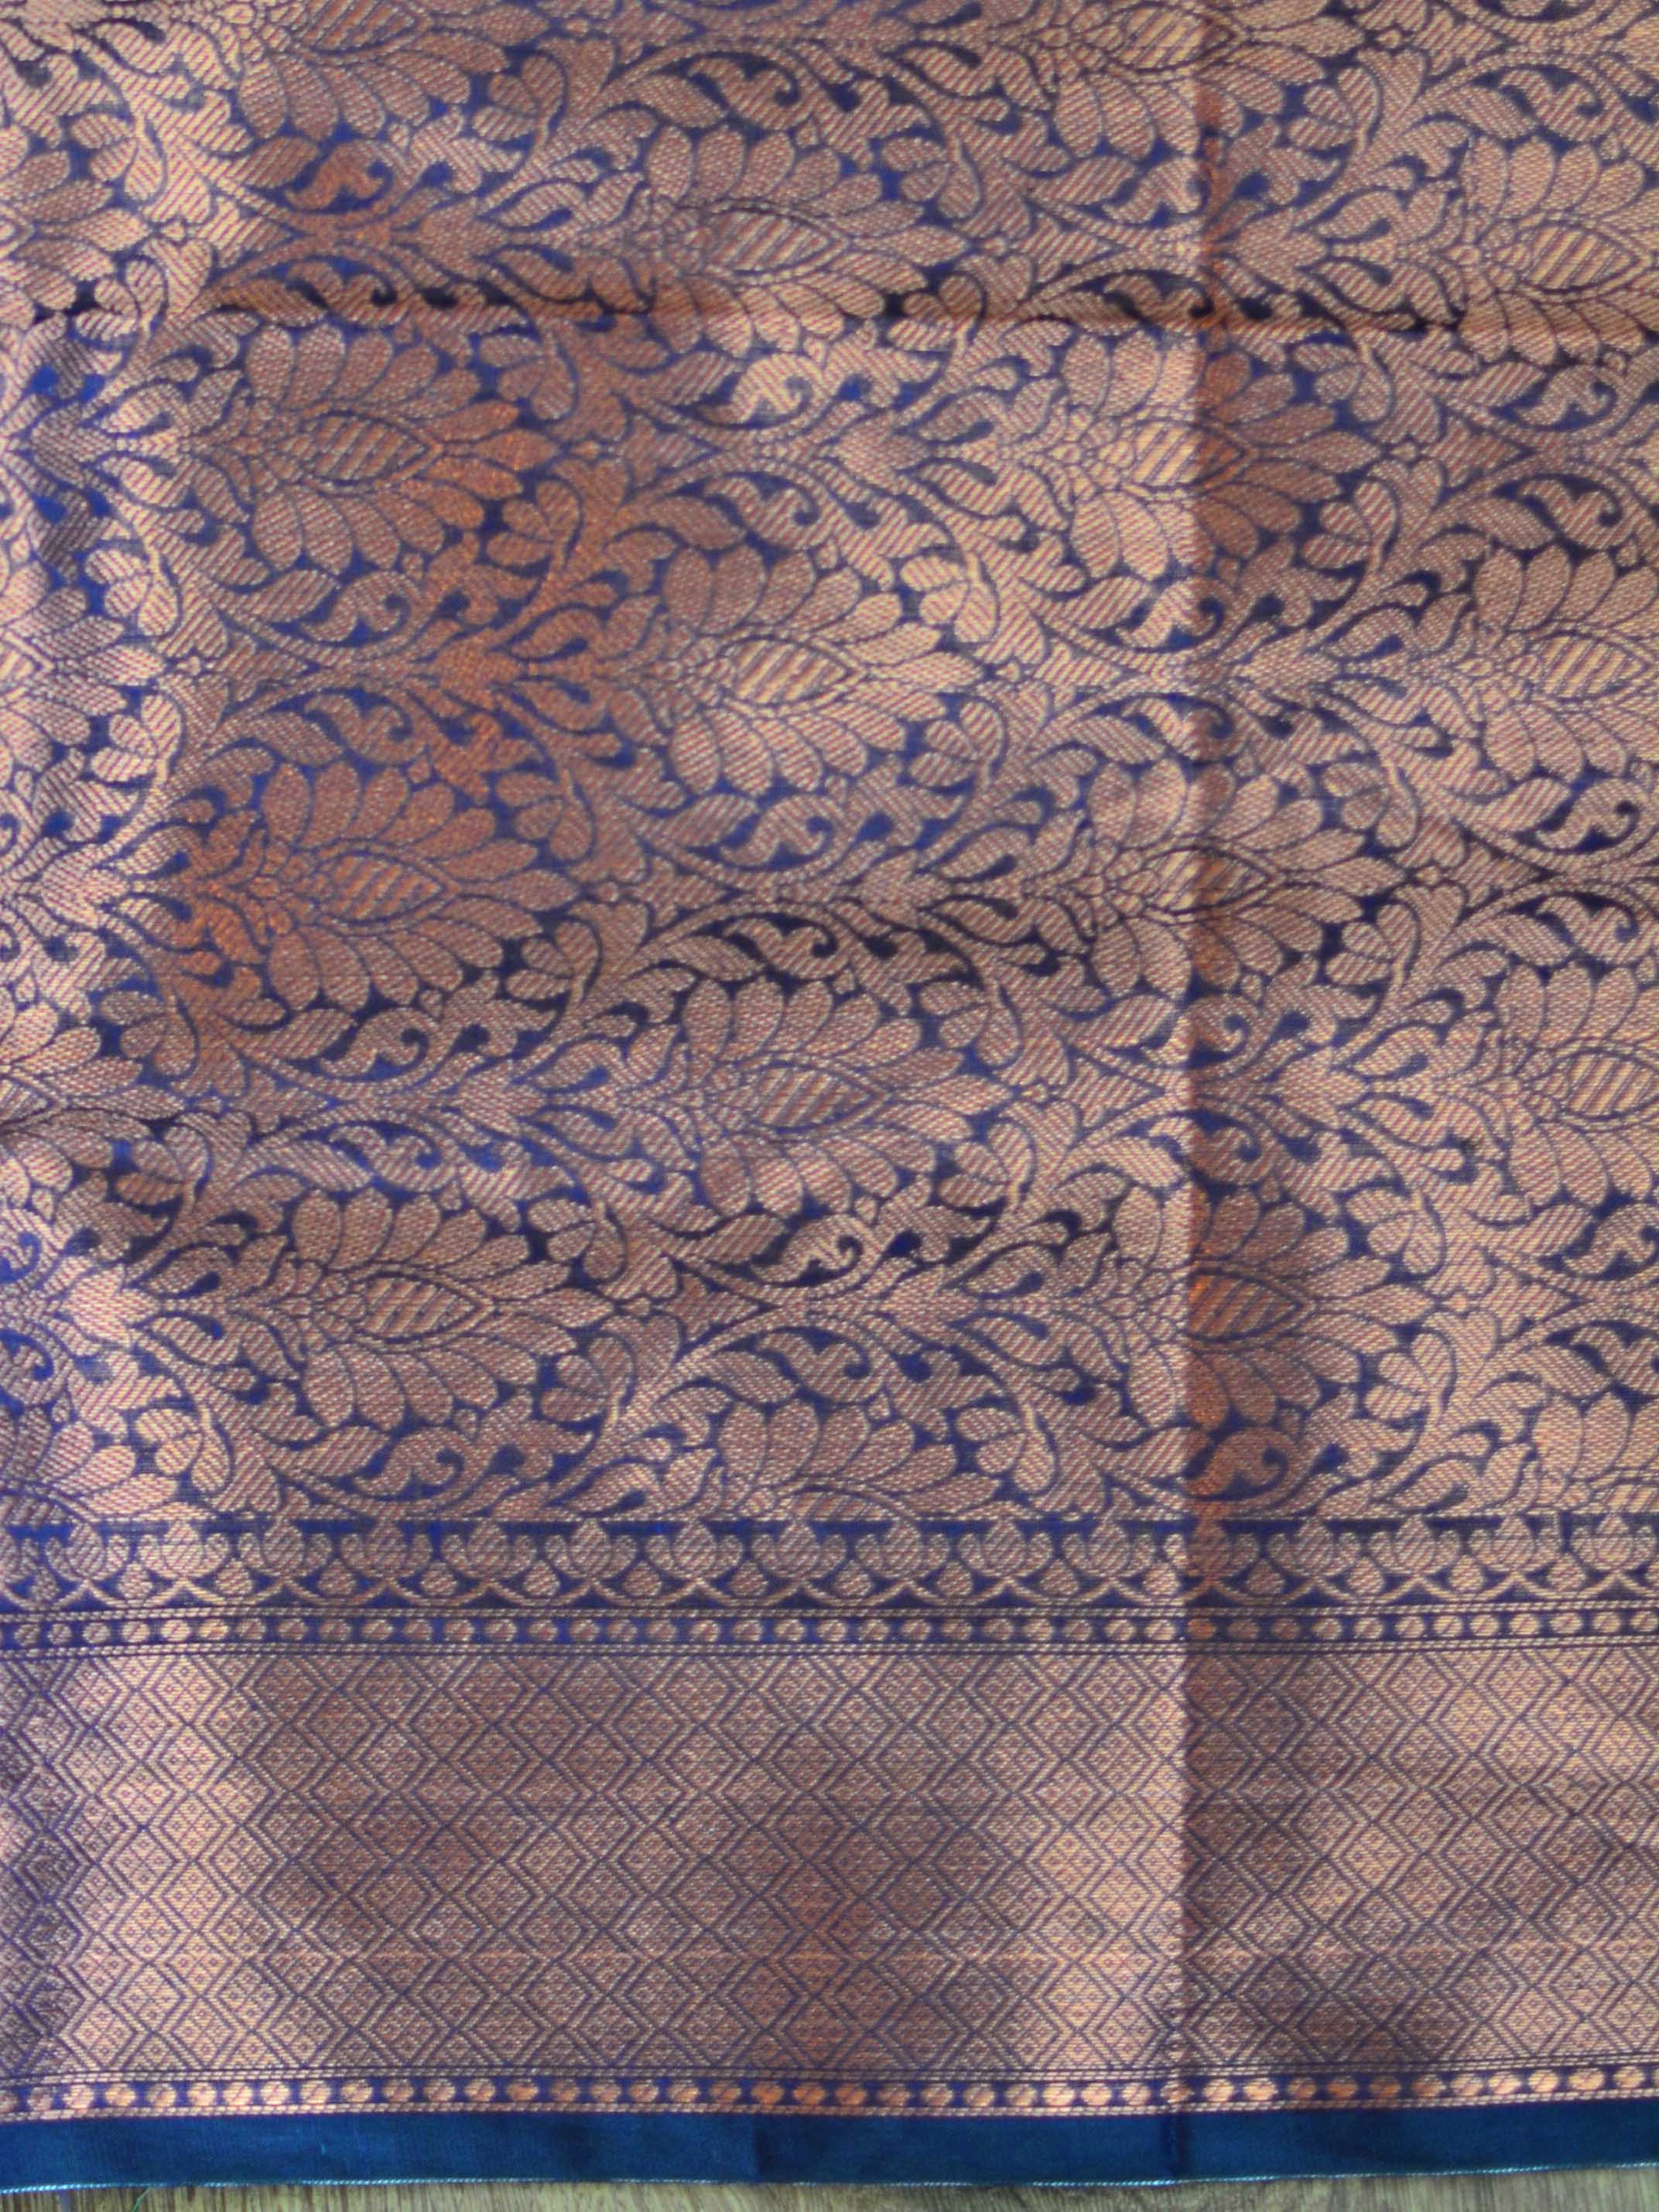 Banarasee Cotton Silk Saree With Copper Zari Buta & Border-Blue